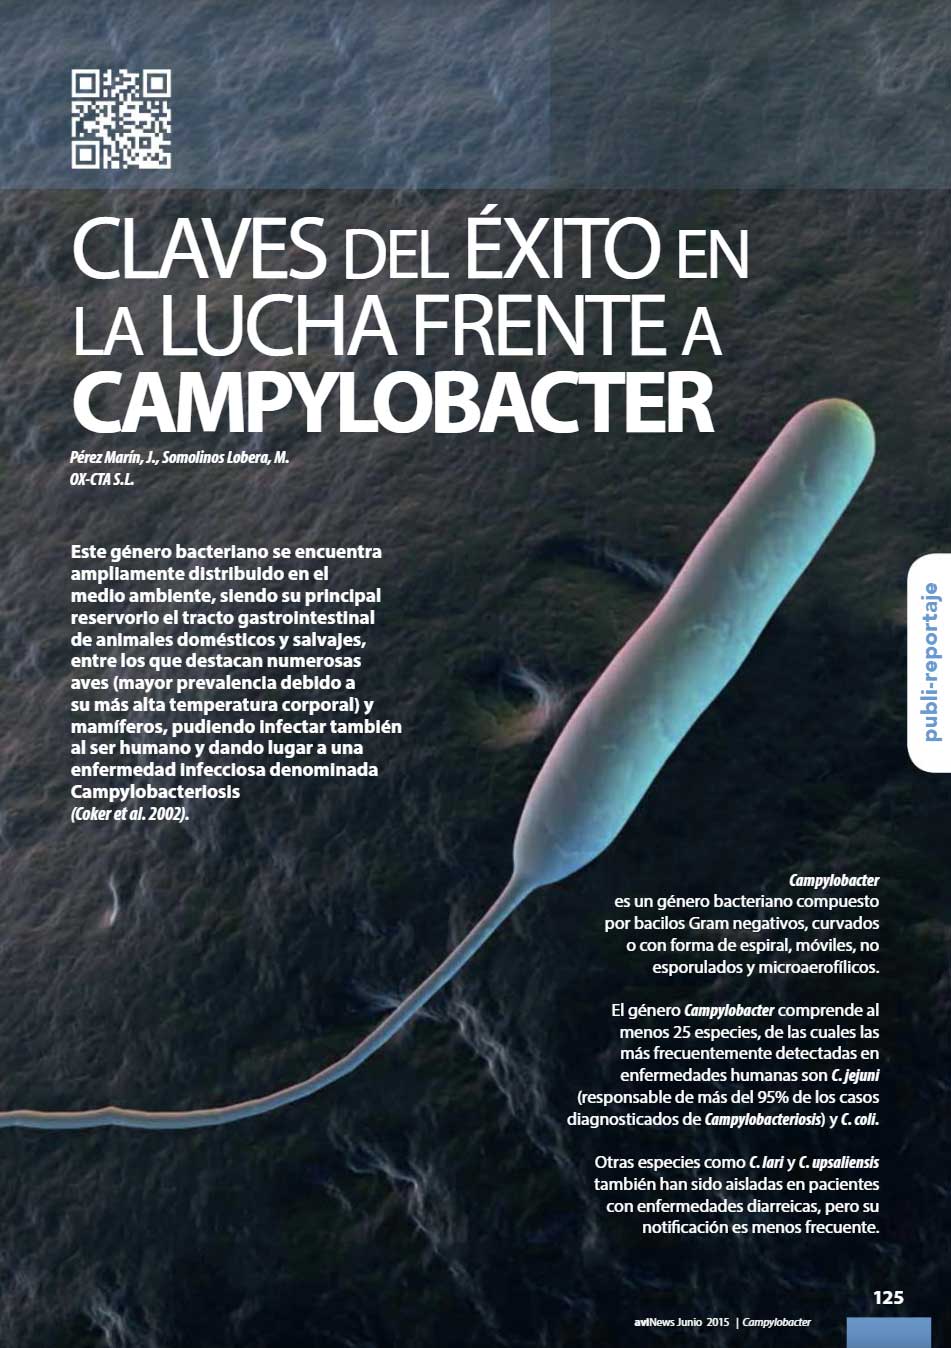 Claves del éxito en la lucha frente al Campylobacter